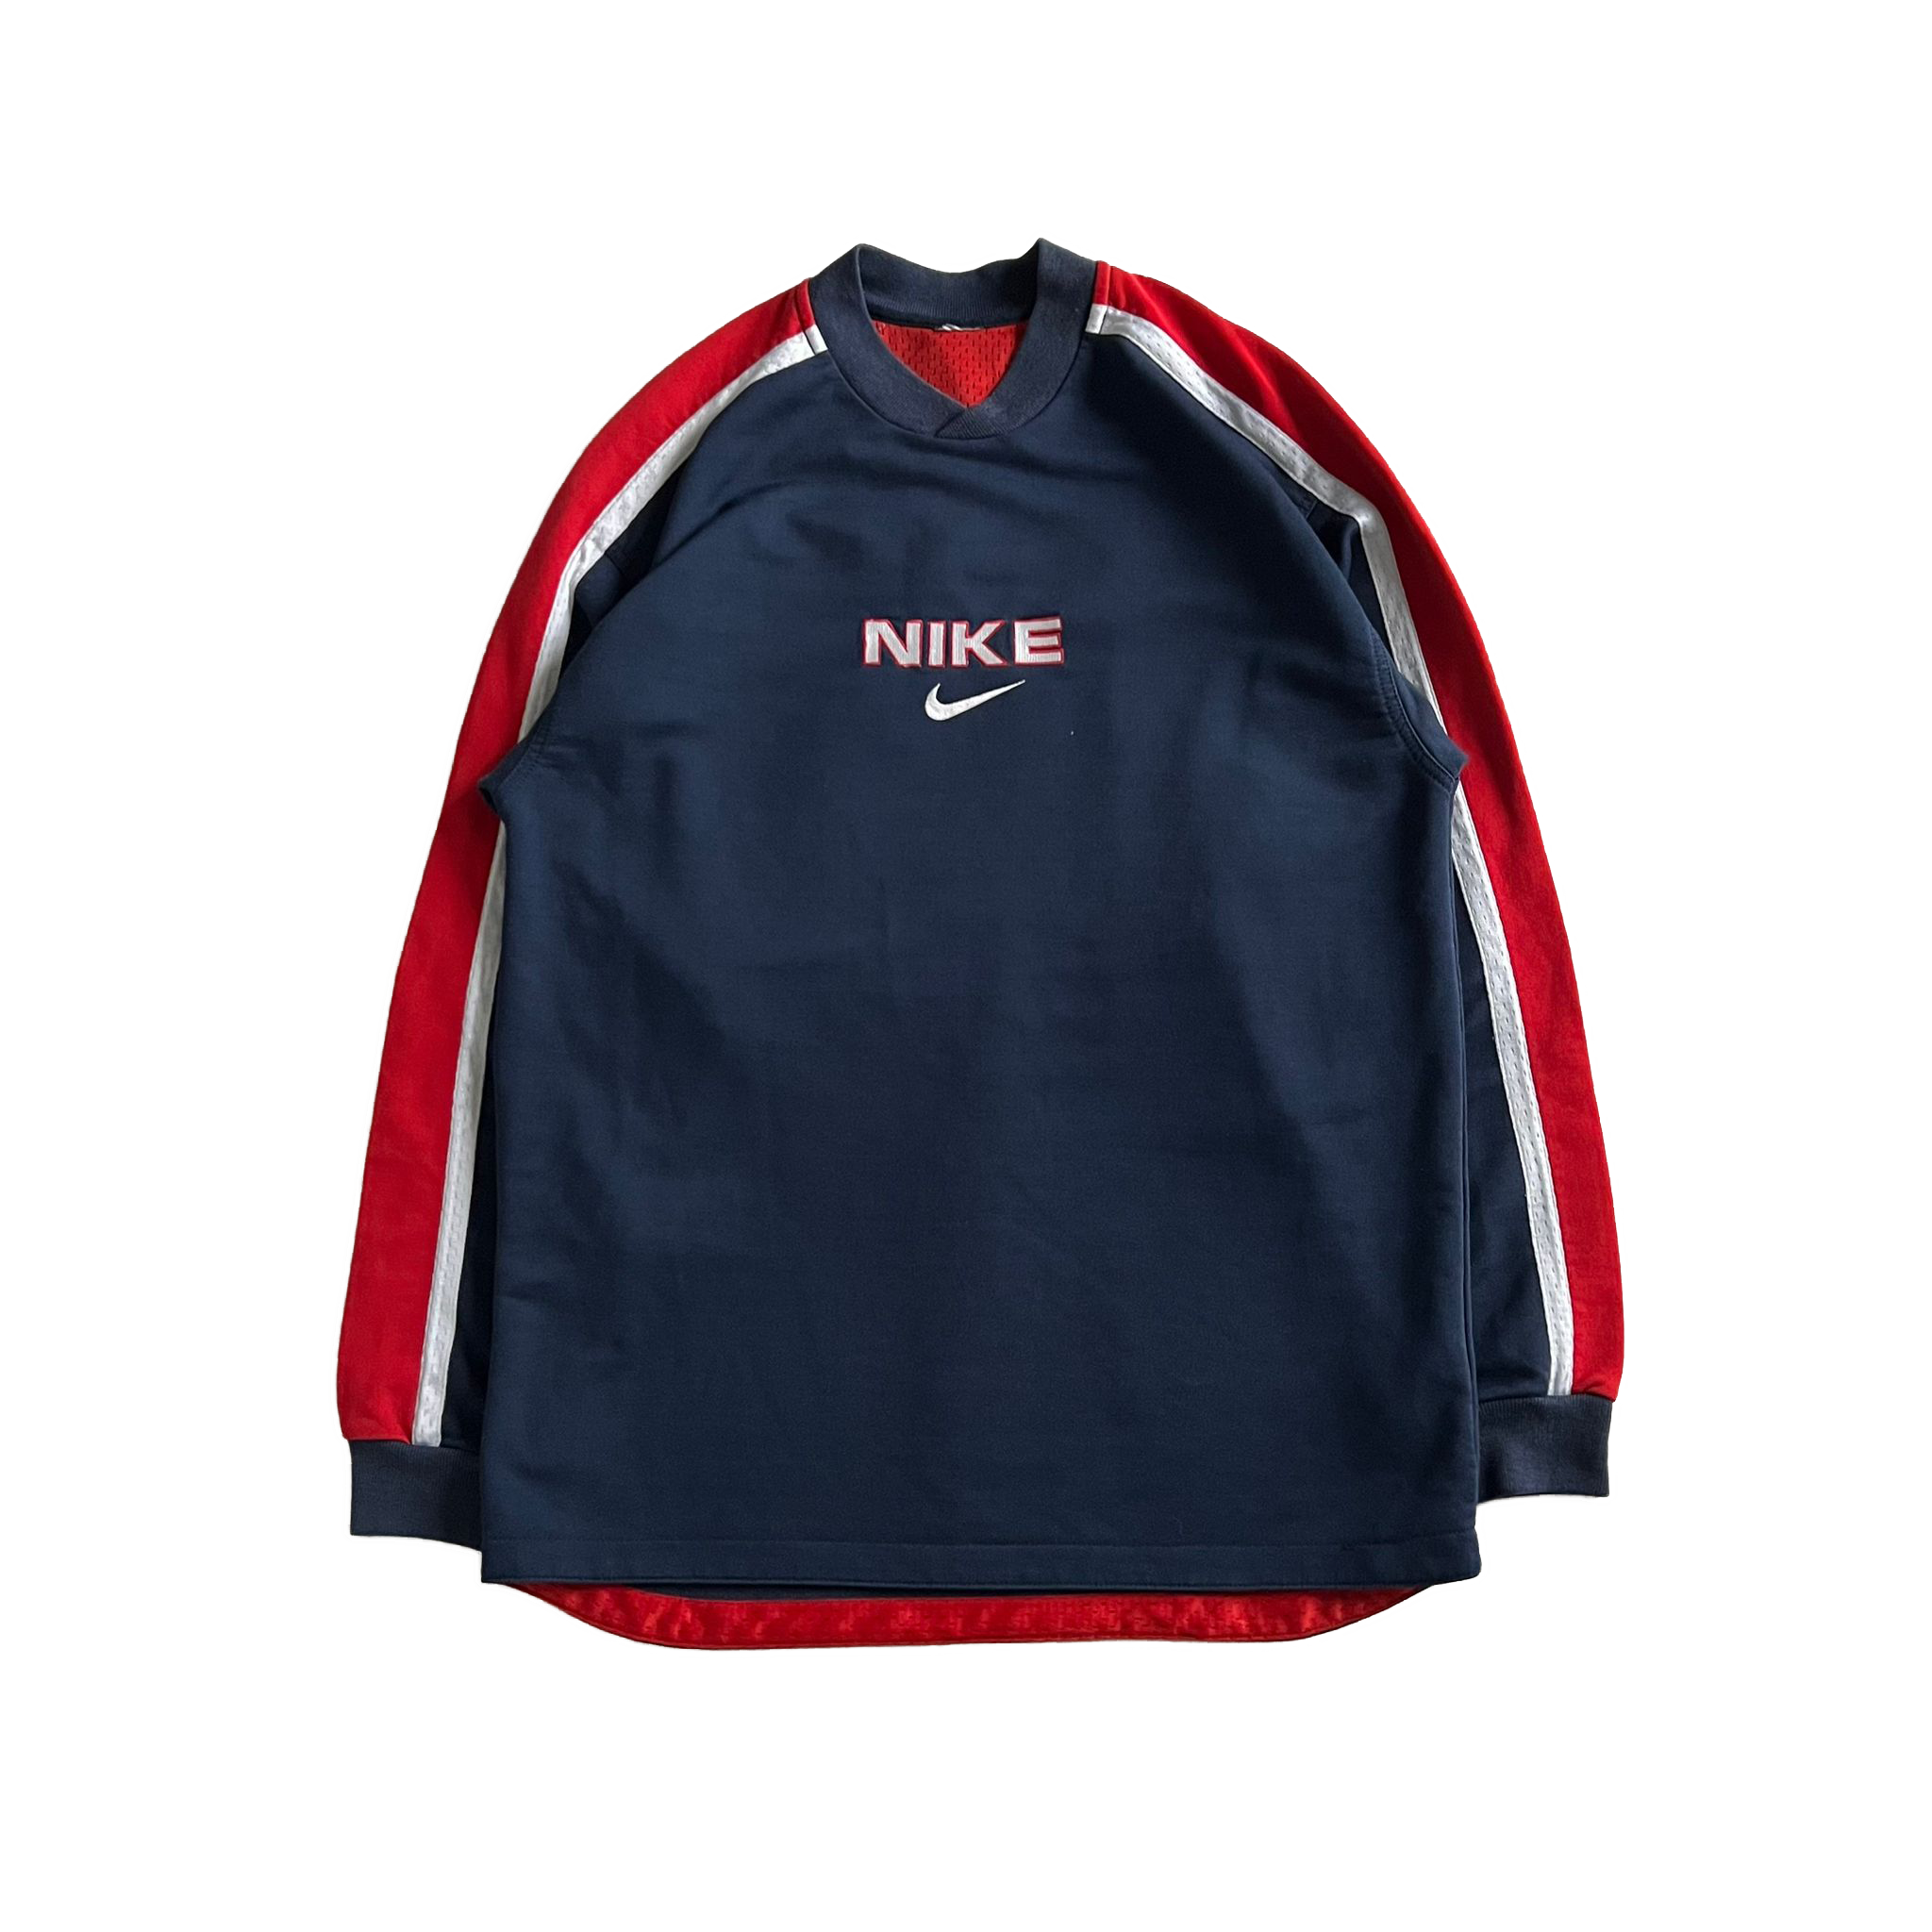 90's Nike sweatshirt